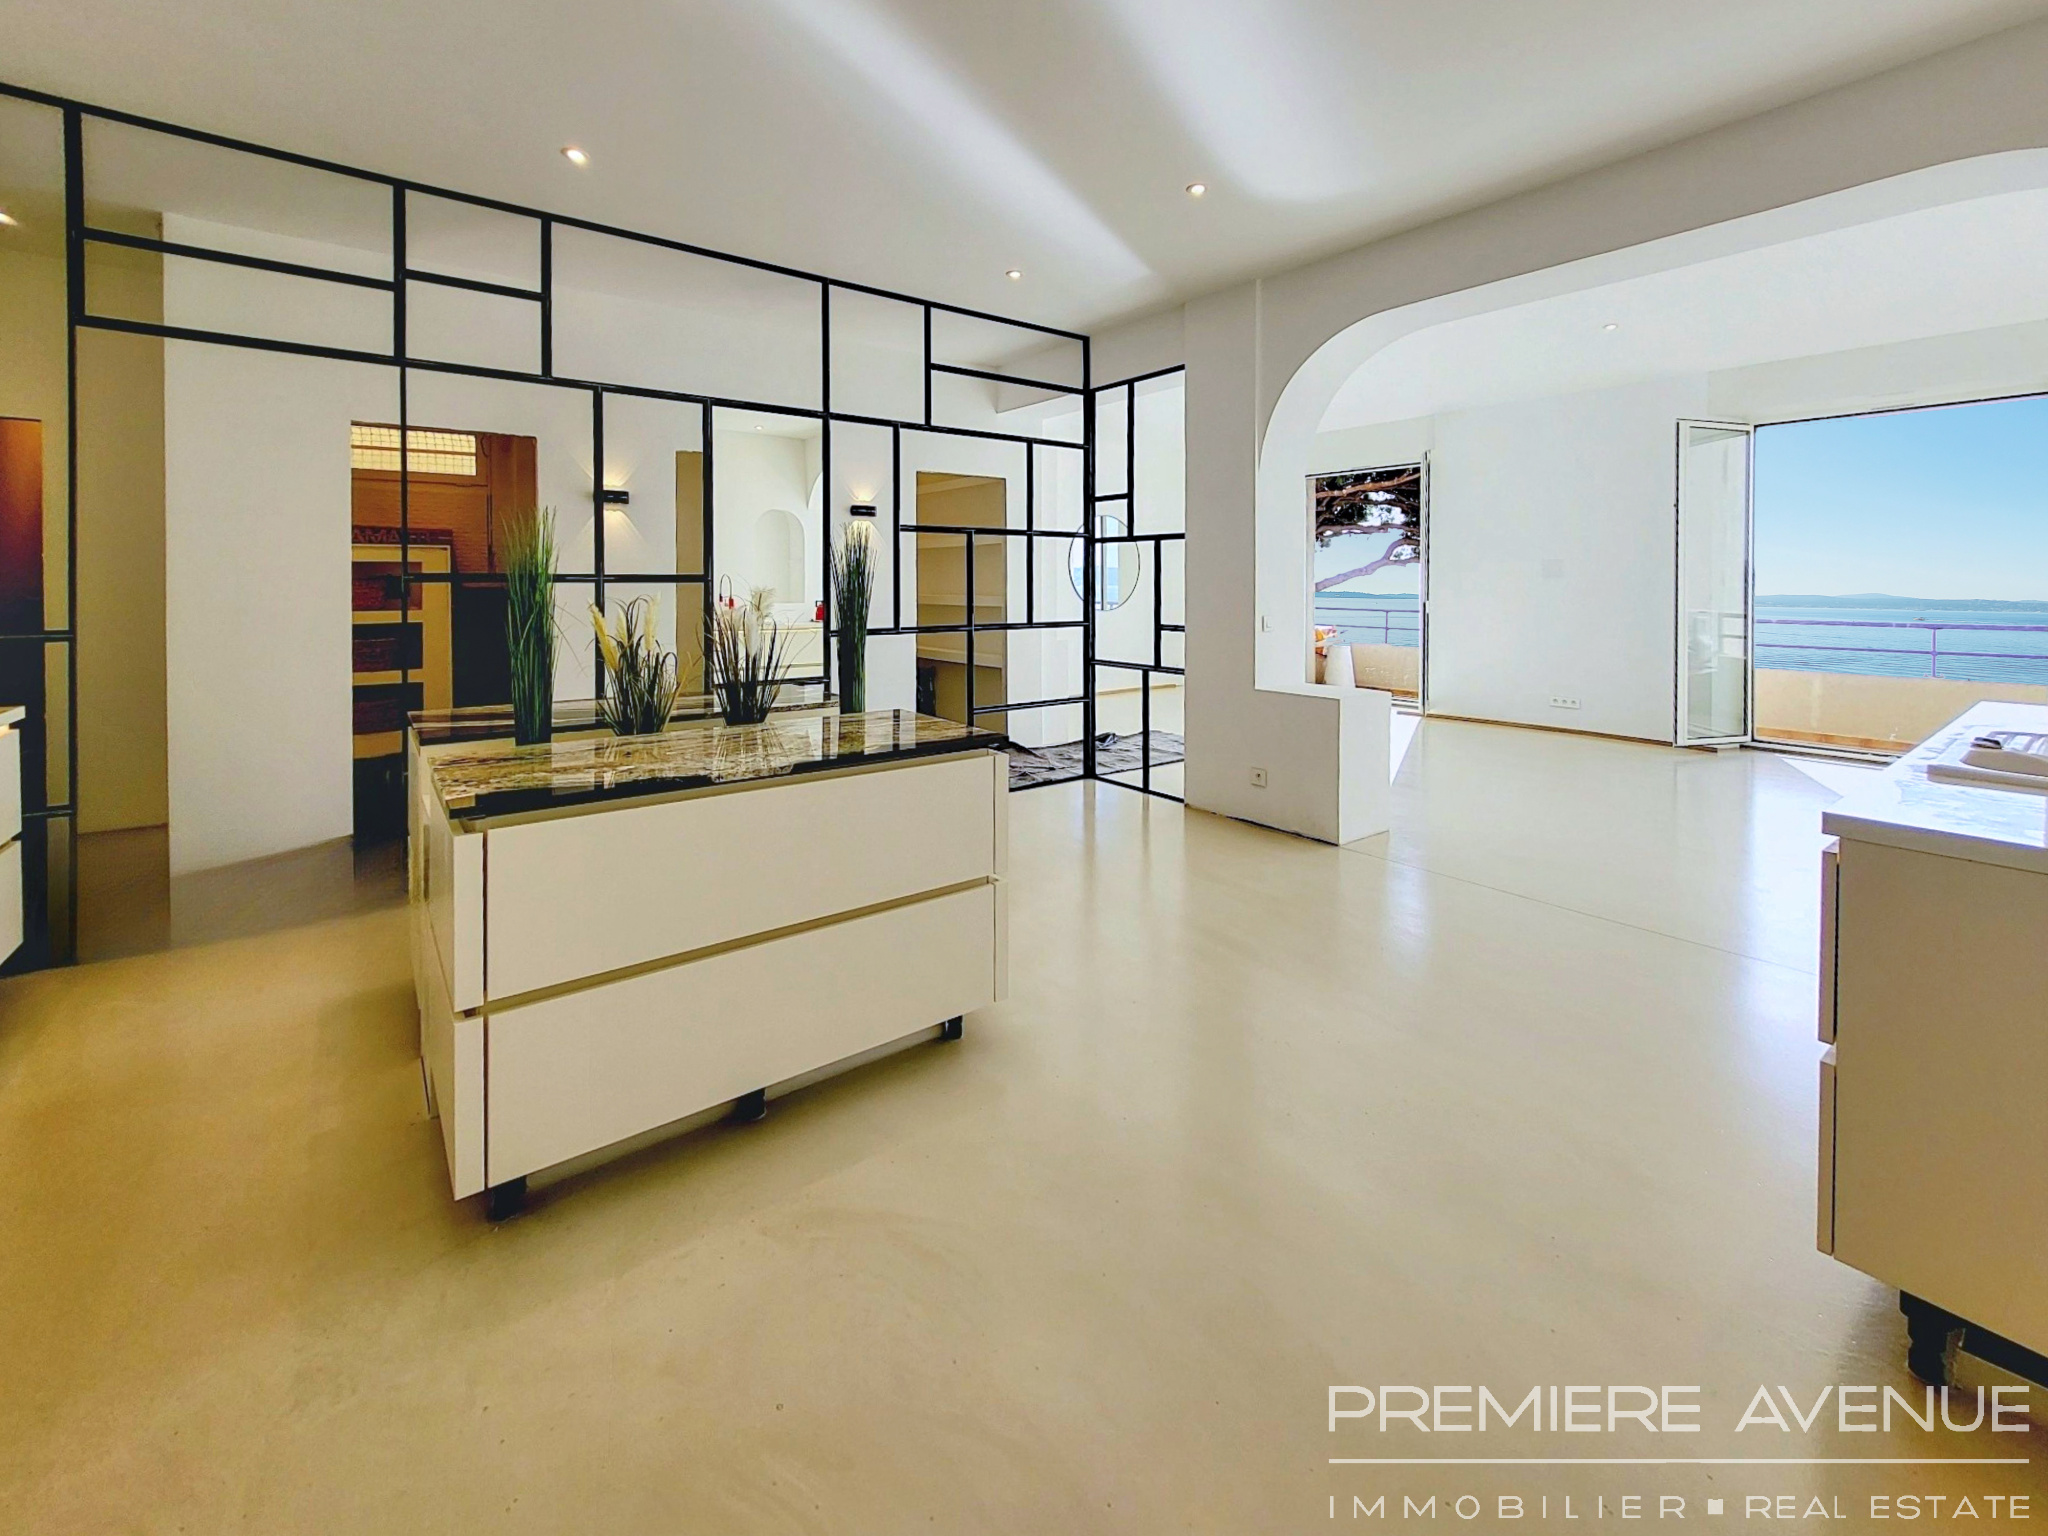 Vente Appartement 135m² 4 Pièces à Sainte-Maxime (83120) - Premiere Avenue